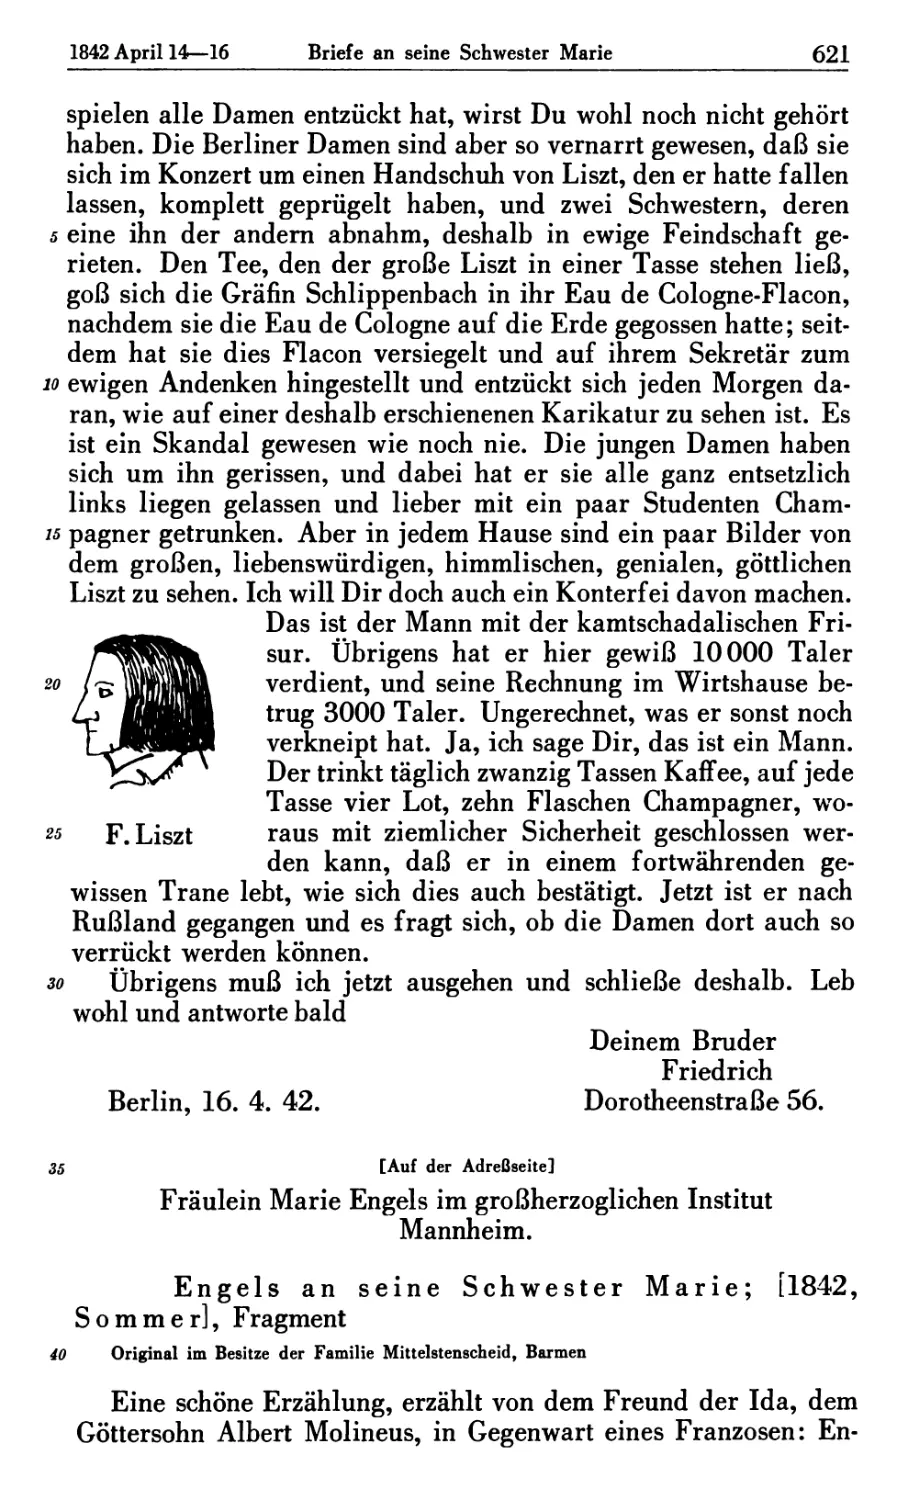 Engels an seine Schwester Marie [1842, Sommer]